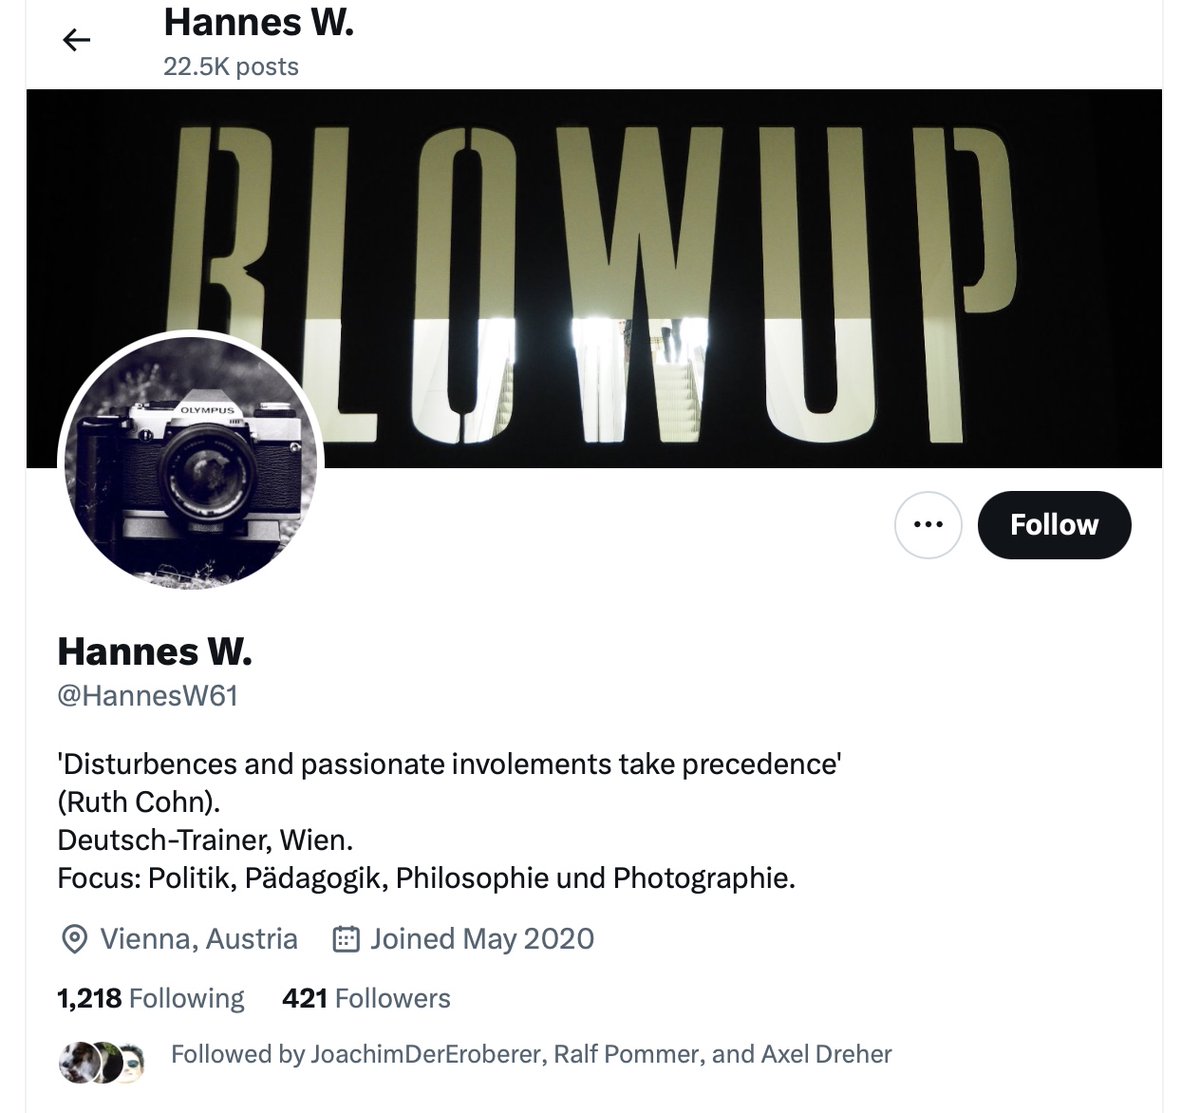 @HannesW61 @DKommorowski Süss, diese anonymen Hasbara Trolls

Focus: Politik, Pädagogik, Philosophie und Photographie.
🤣🤣🤣🤣🤣🤣